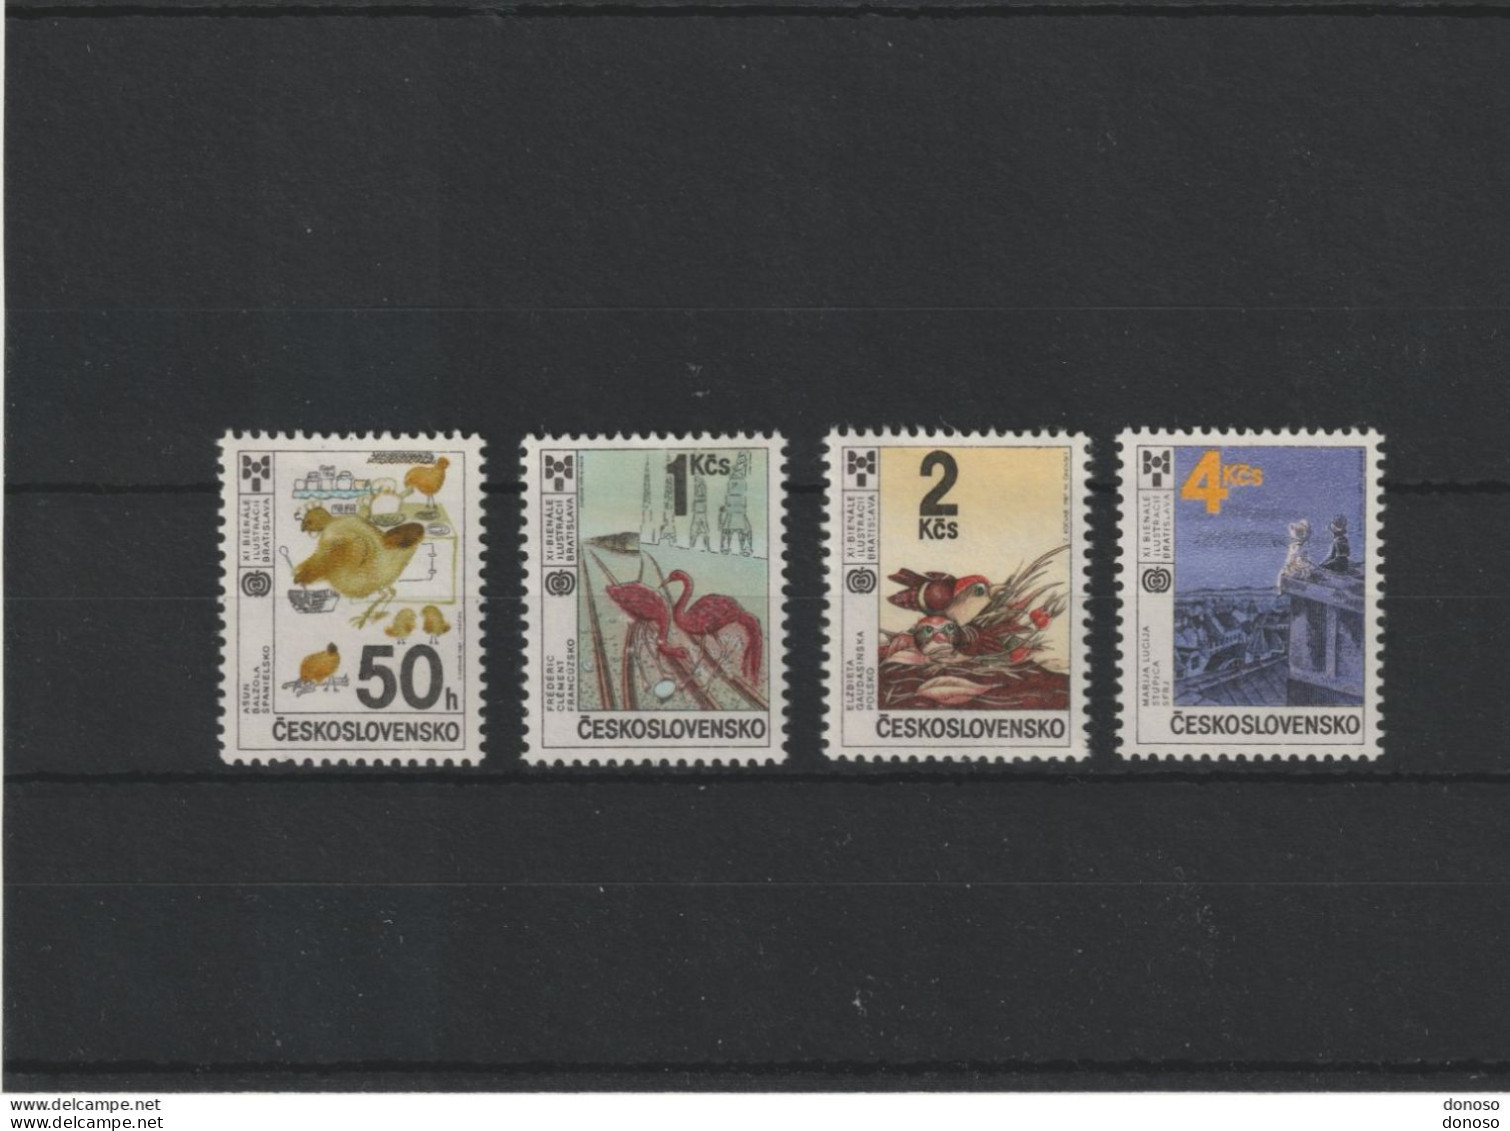 TCHECOSLOVAQUIE 1987 LIVRES POUR ENFANTS Yvert 2732-2735, Michel 2921-2924 NEUF** MNH Cote 2,50 Euros - Unused Stamps